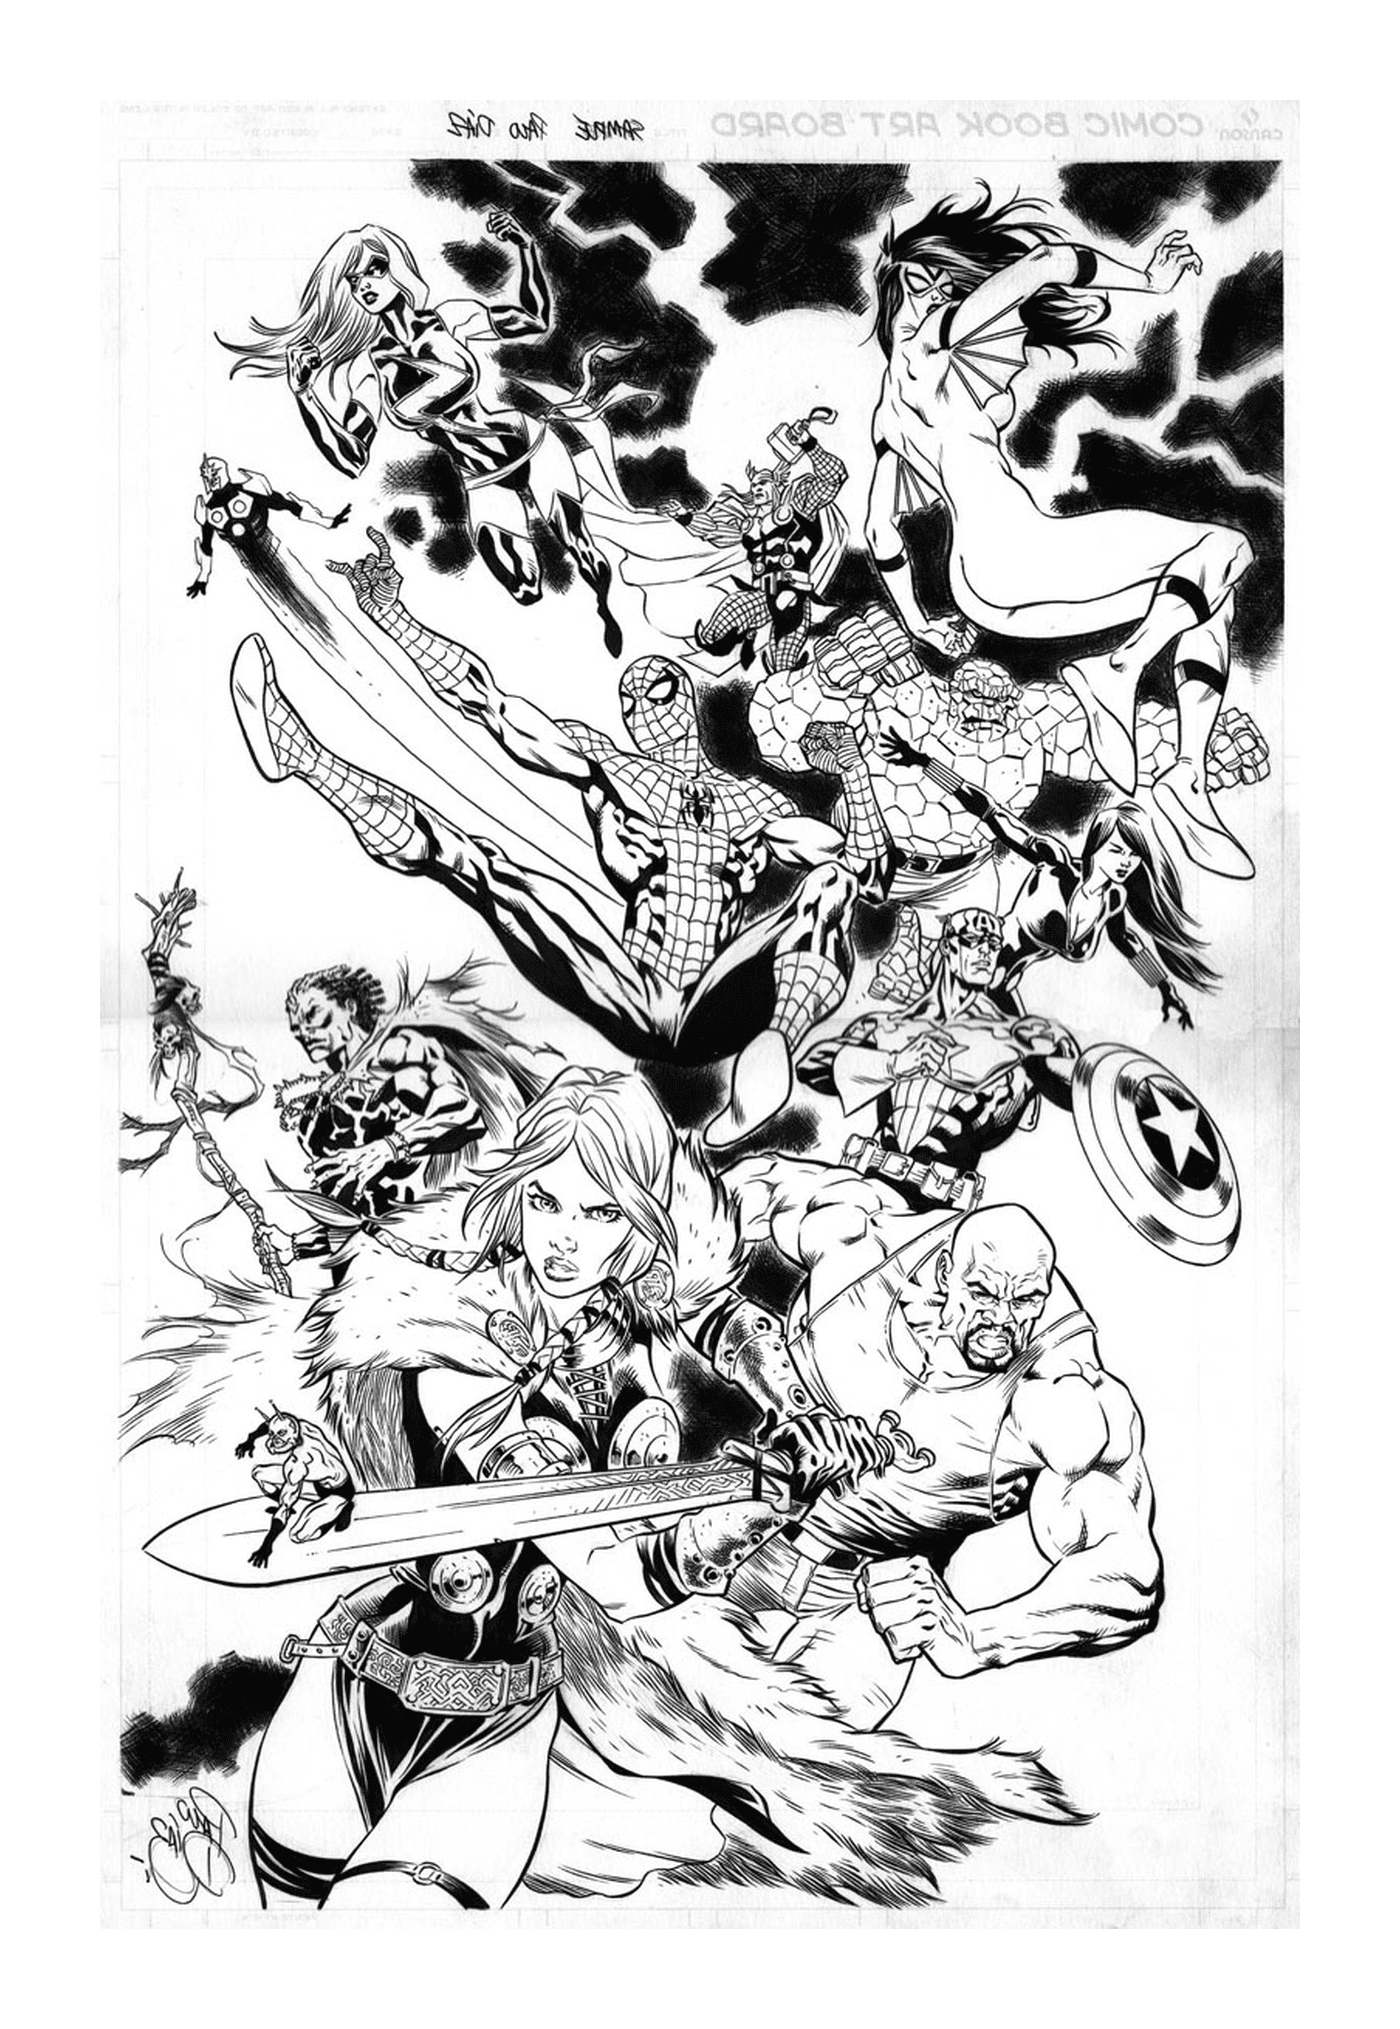  Un gruppo di supereroi in bianco e nero 